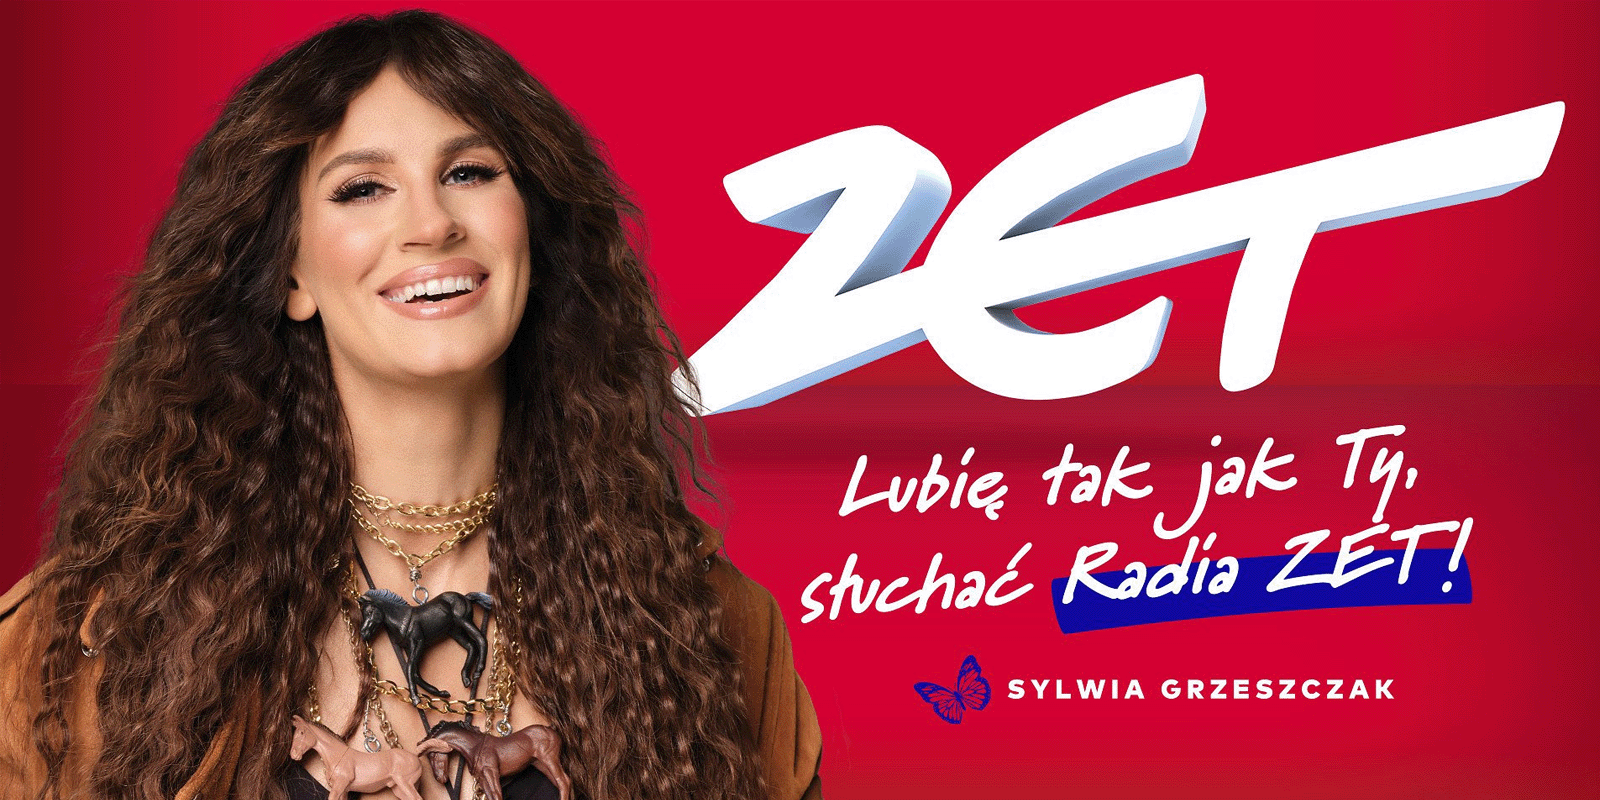 Nowa kampania wizerunkowa Radia ZET ze znaną wokalistką radio MEDIARUN COM RADIO ZET KAMPANIA GRZESZCZAK SYLWIA V1